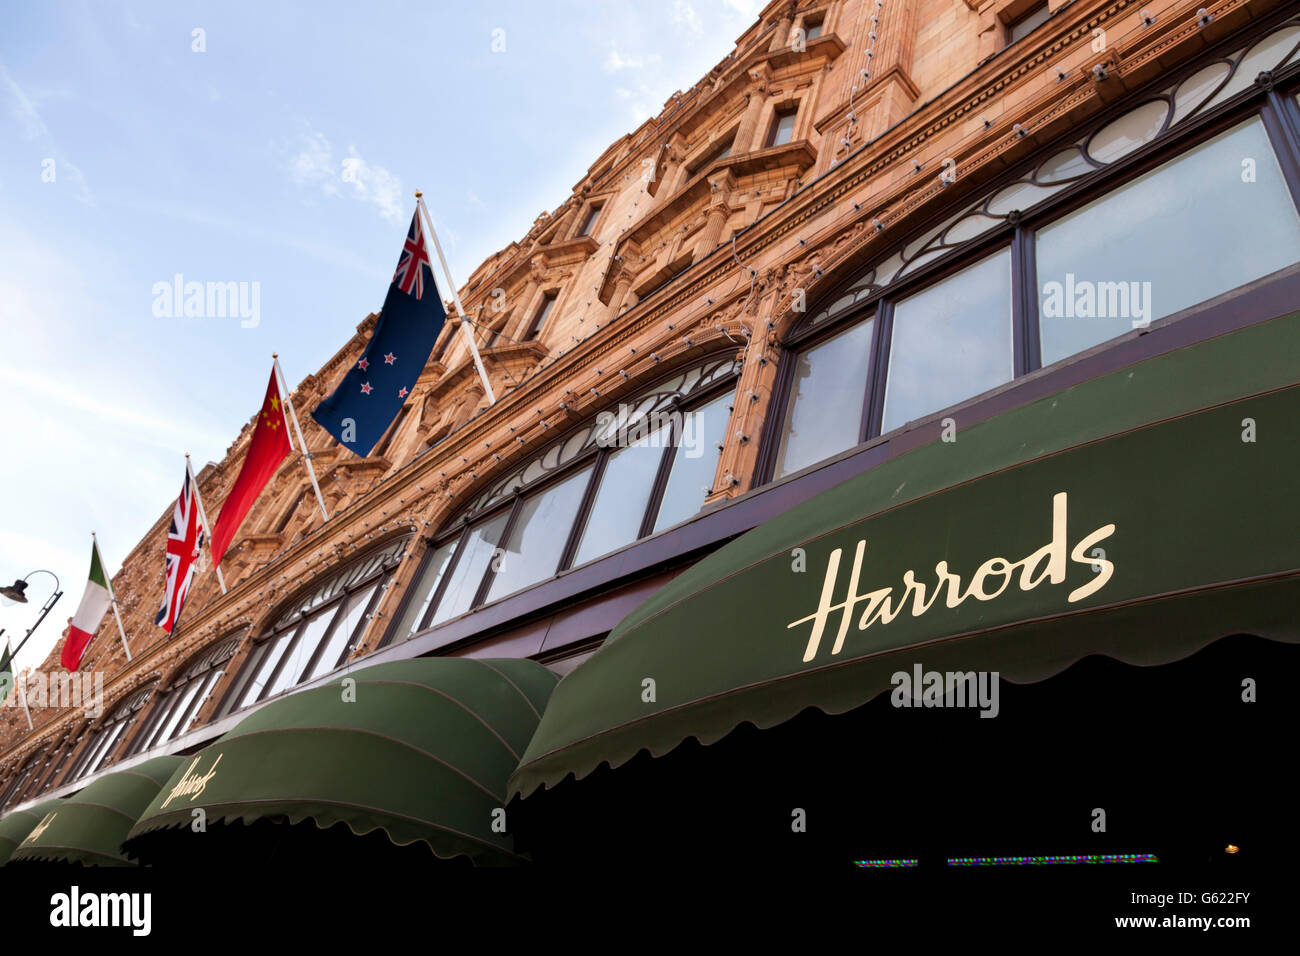 Tettoia, magazzini Harrods a Londra, Inghilterra, Regno Unito, Europa Foto Stock